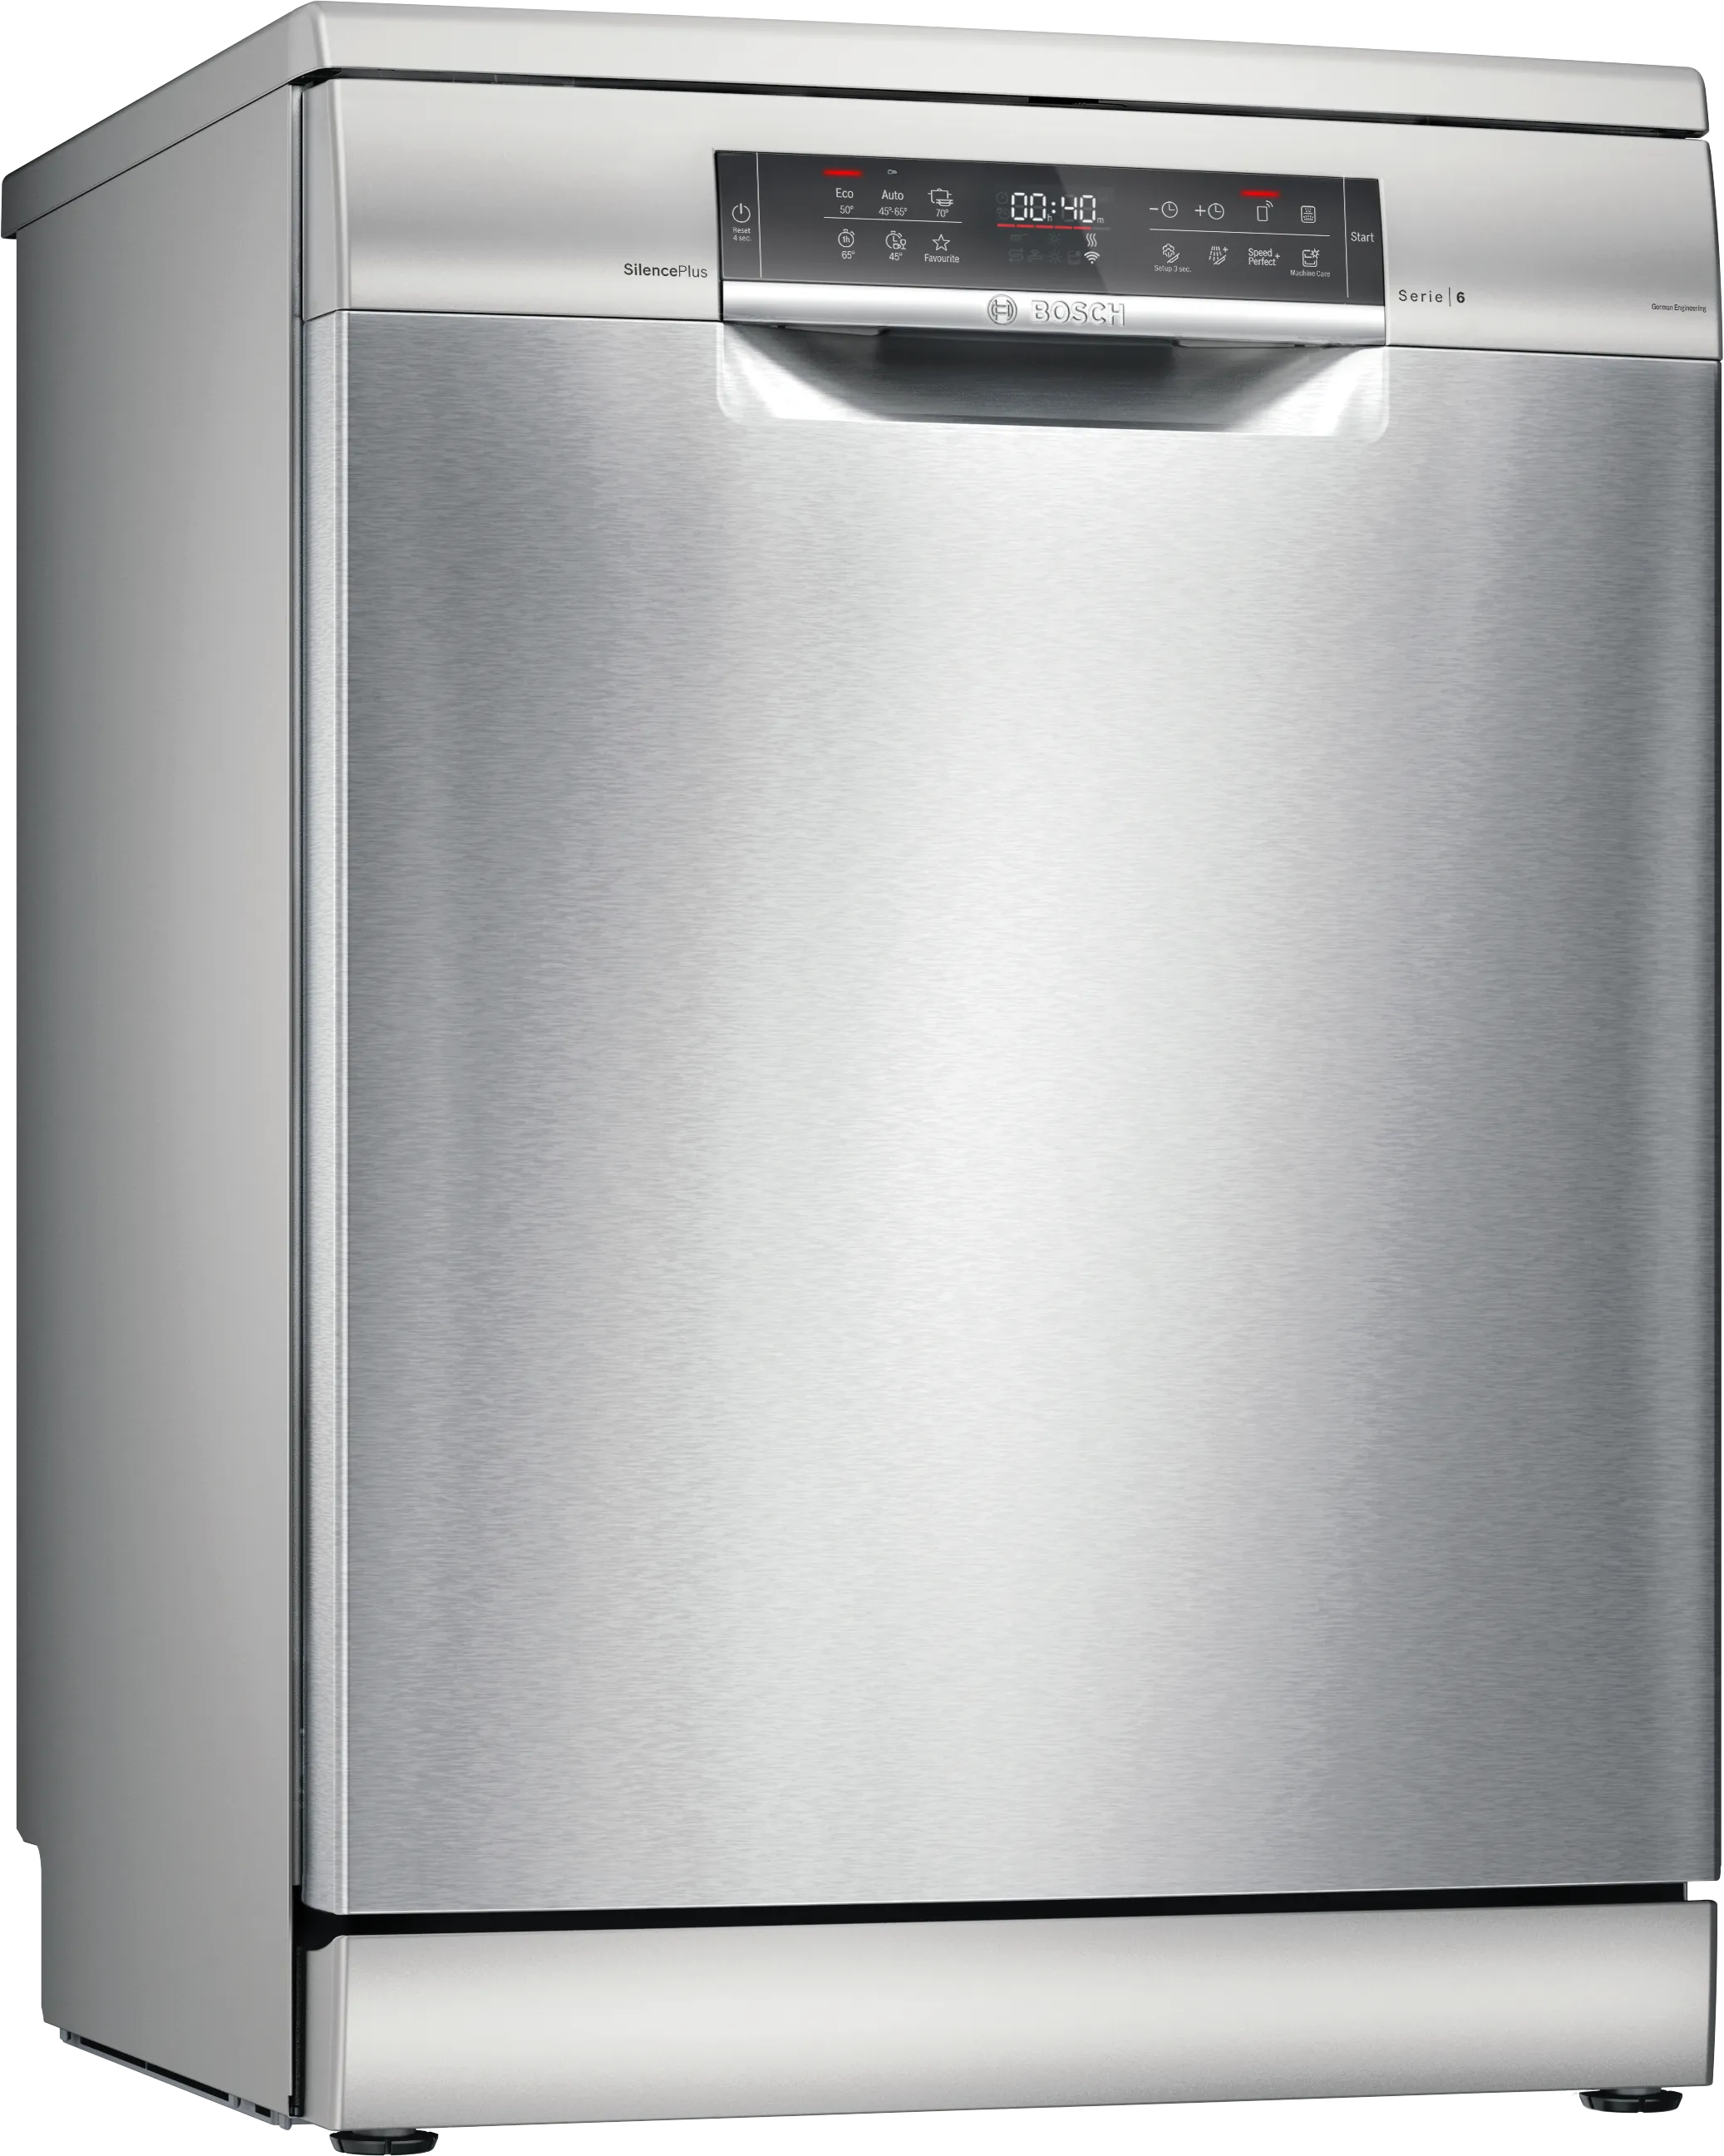 Серия 6 Отдельностоящие посудомоечные машины 60 cm серебро нержавеющая сталь 